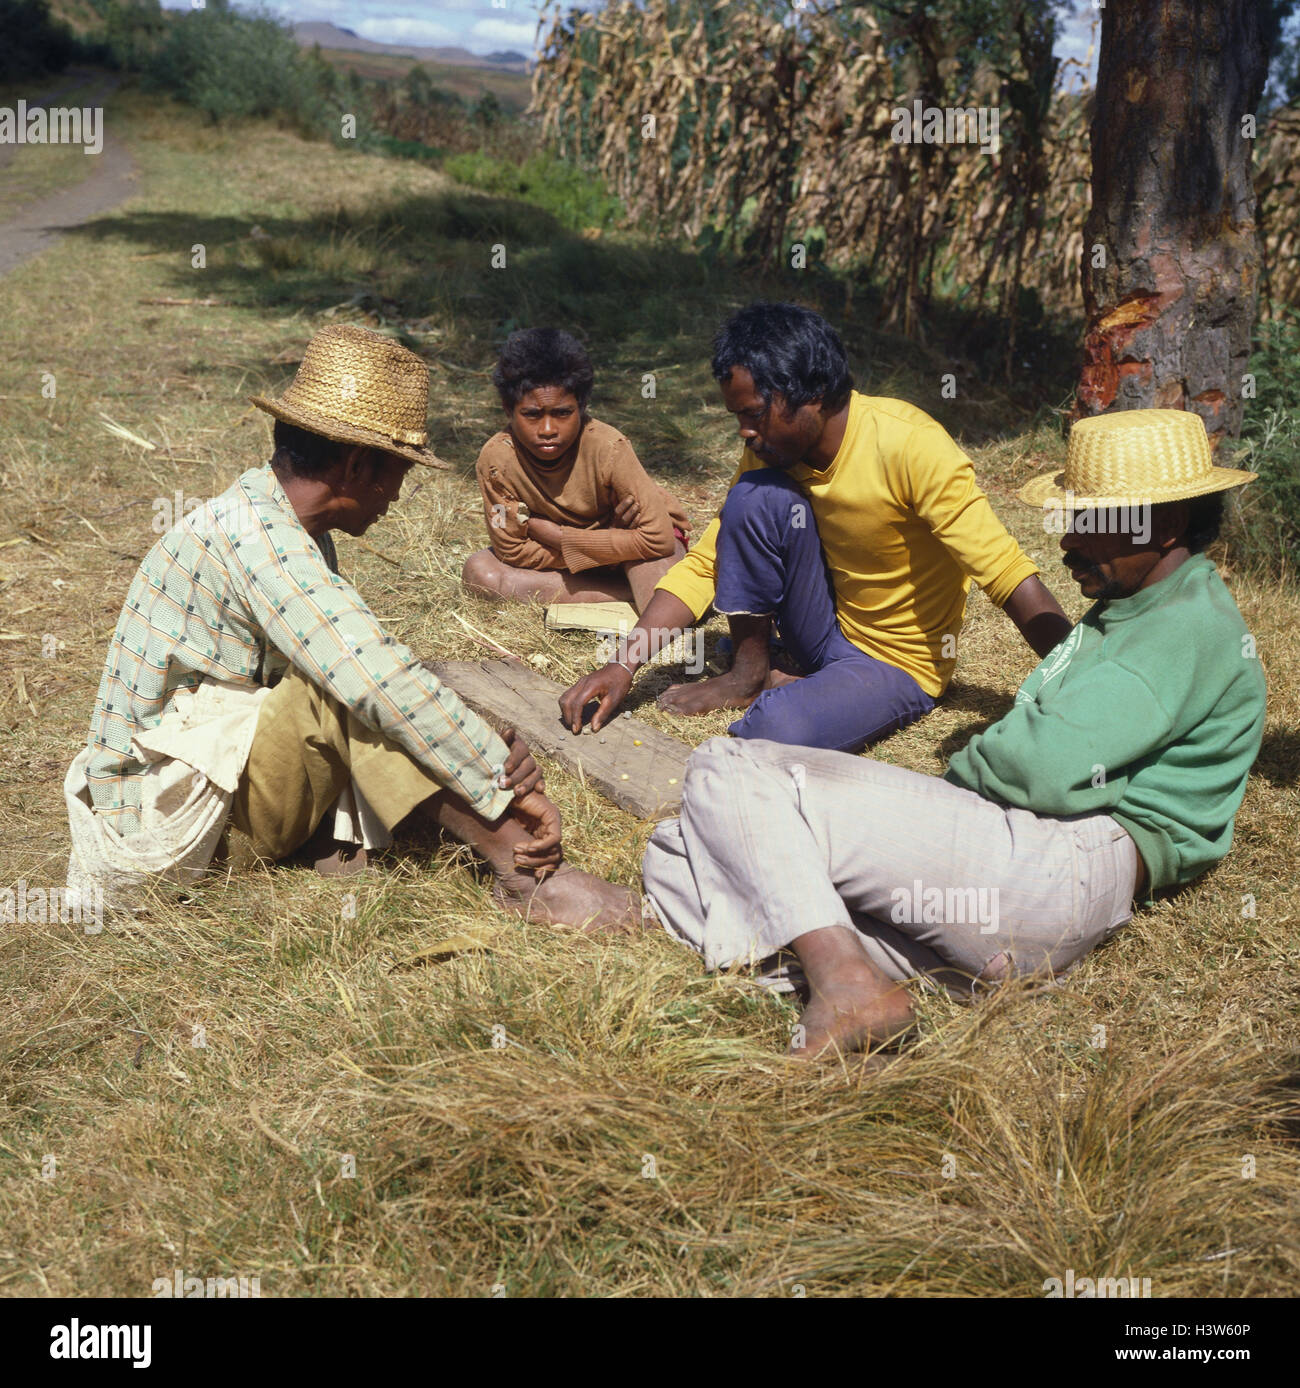 Madagaskar, Antsirabe, native Personen mit ein traditionelles Spiel "Fanorona", Männer, spielen, dort zu sitzen, Rasen, Wiese, Natur, Himmel blau, draußen Stockfoto